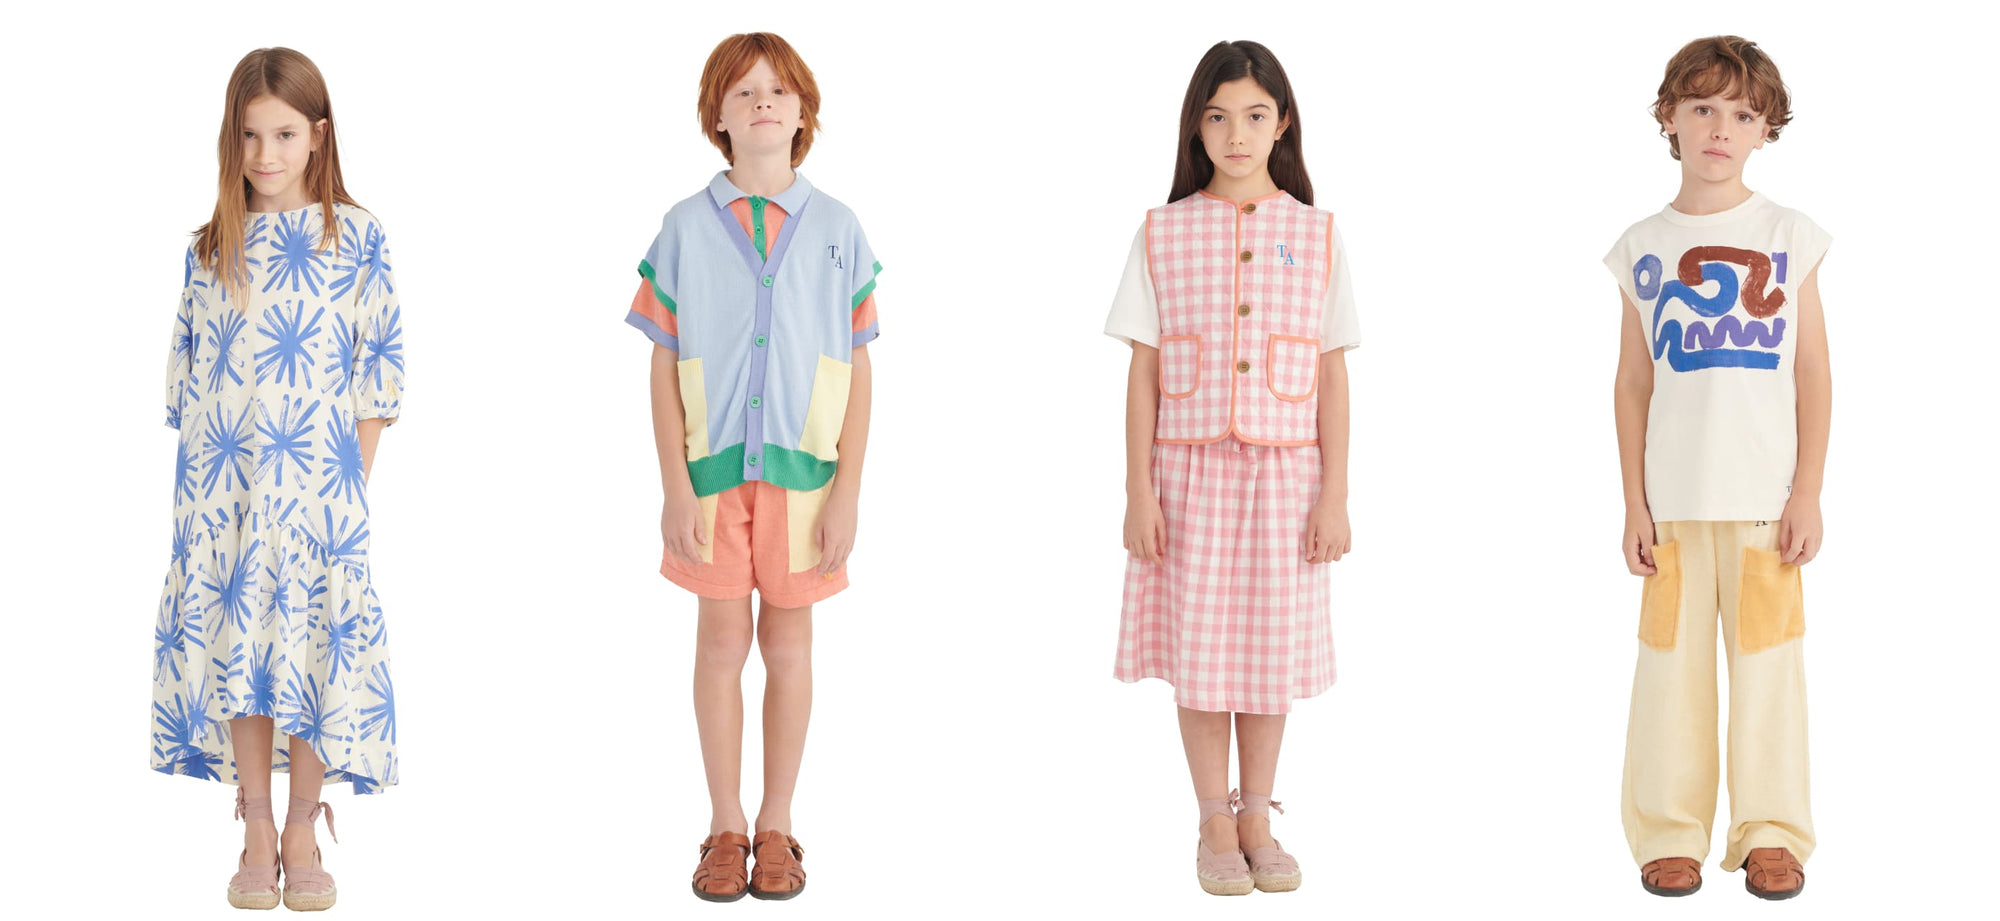 True Artist – Modern and Sustainable Childrenswear